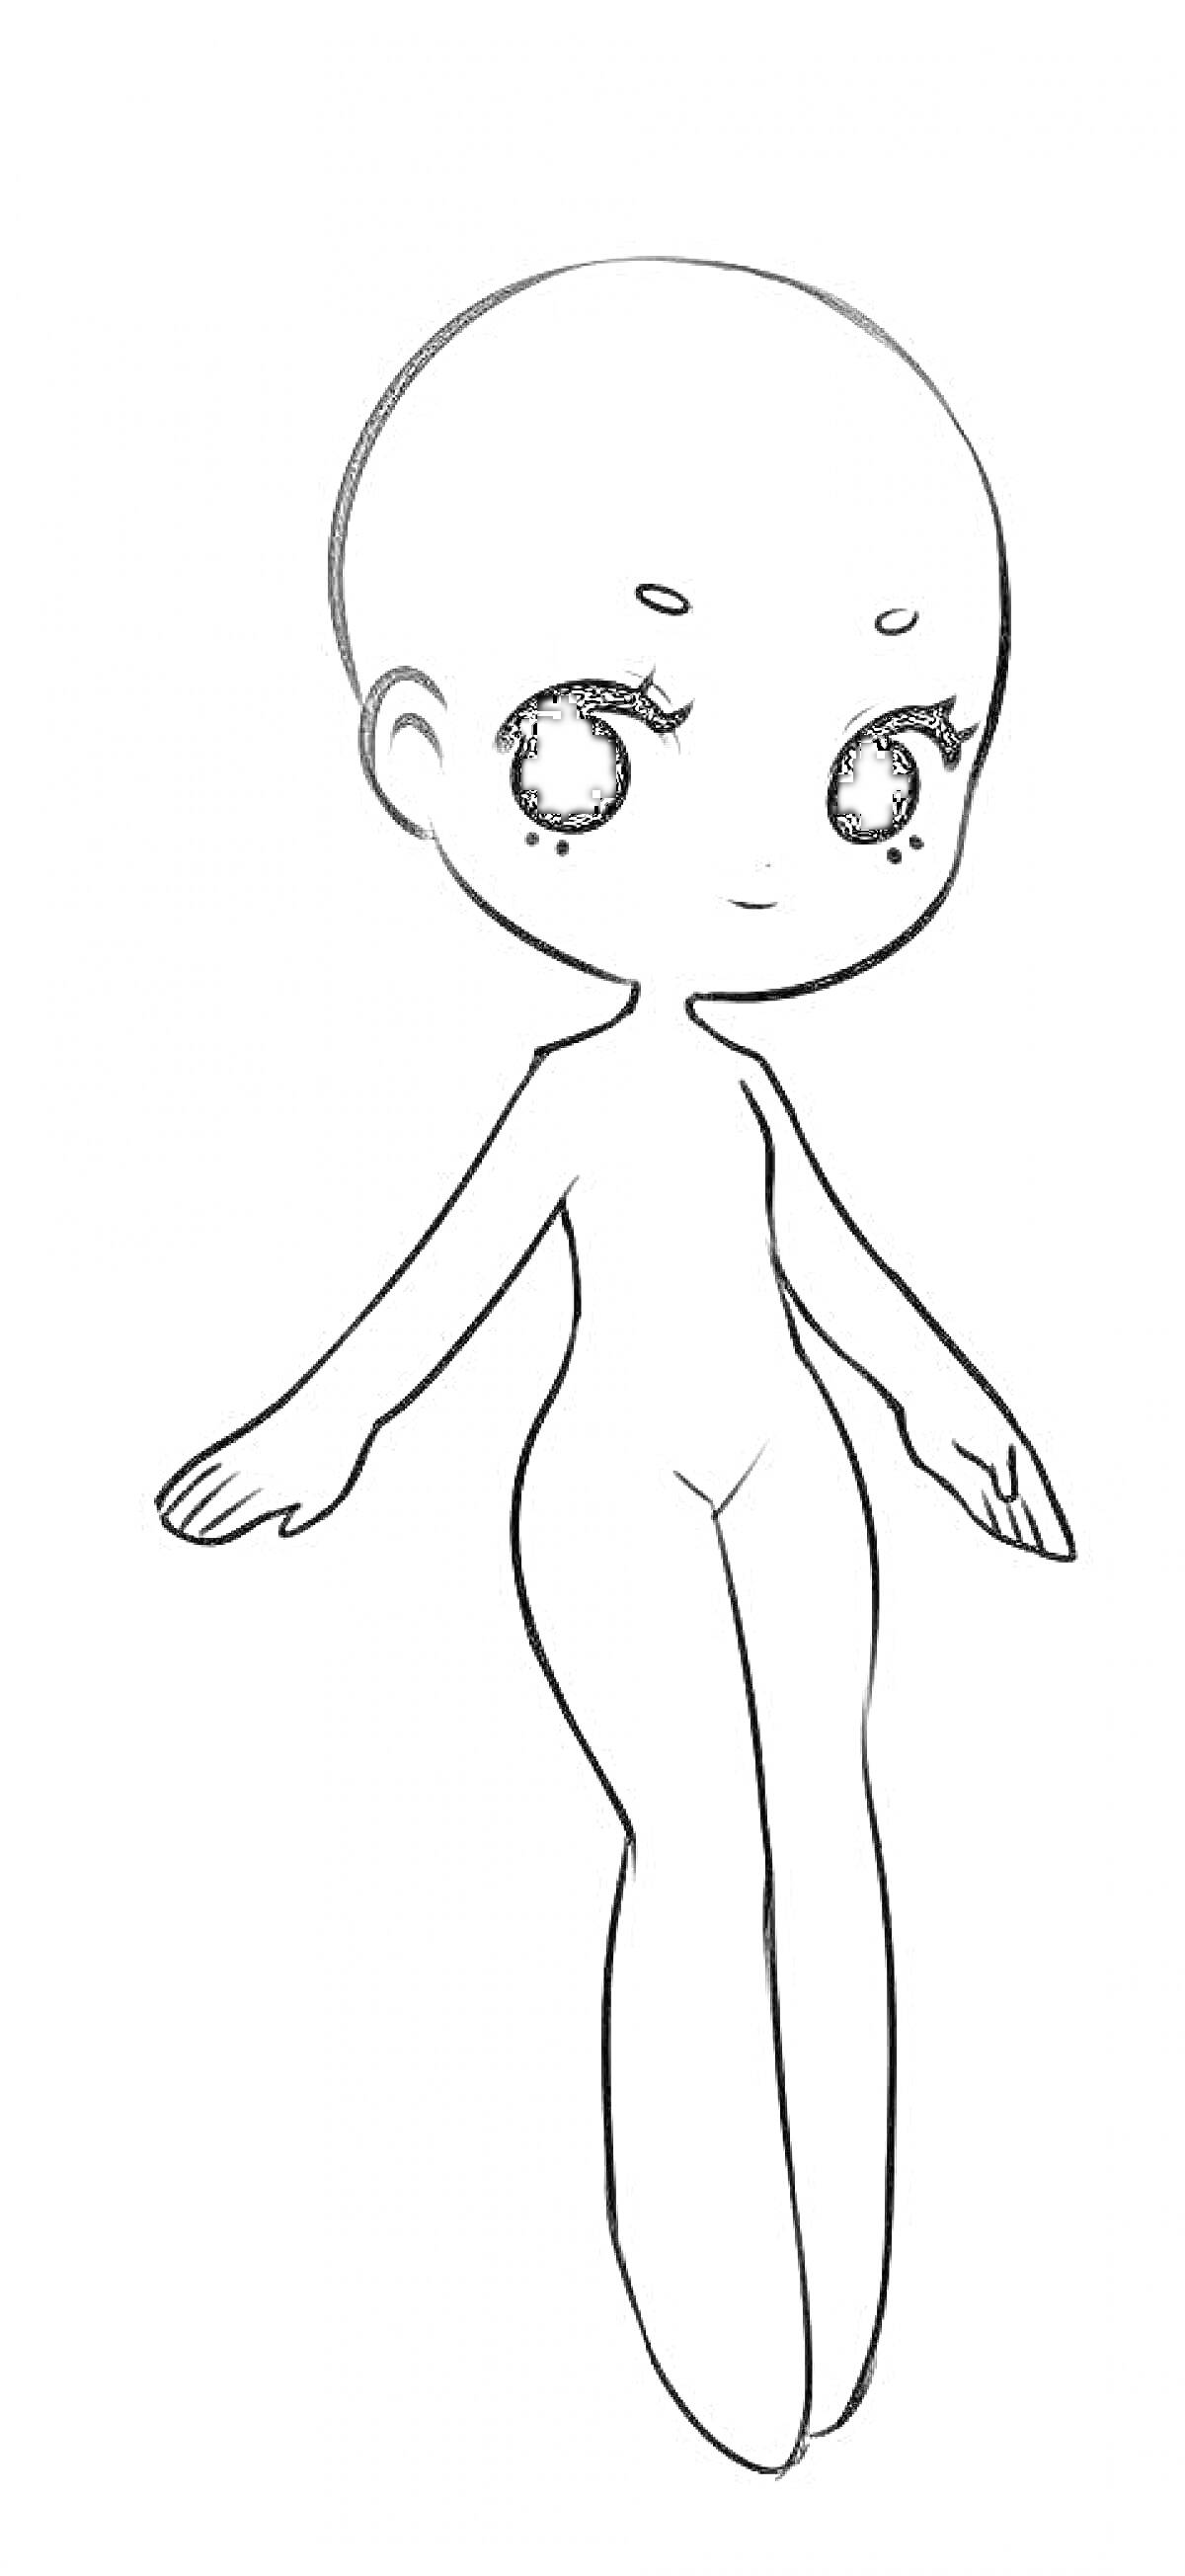 Раскраска Контурное изображение тела аниме персонажа с большими глазами, без одежды и волос